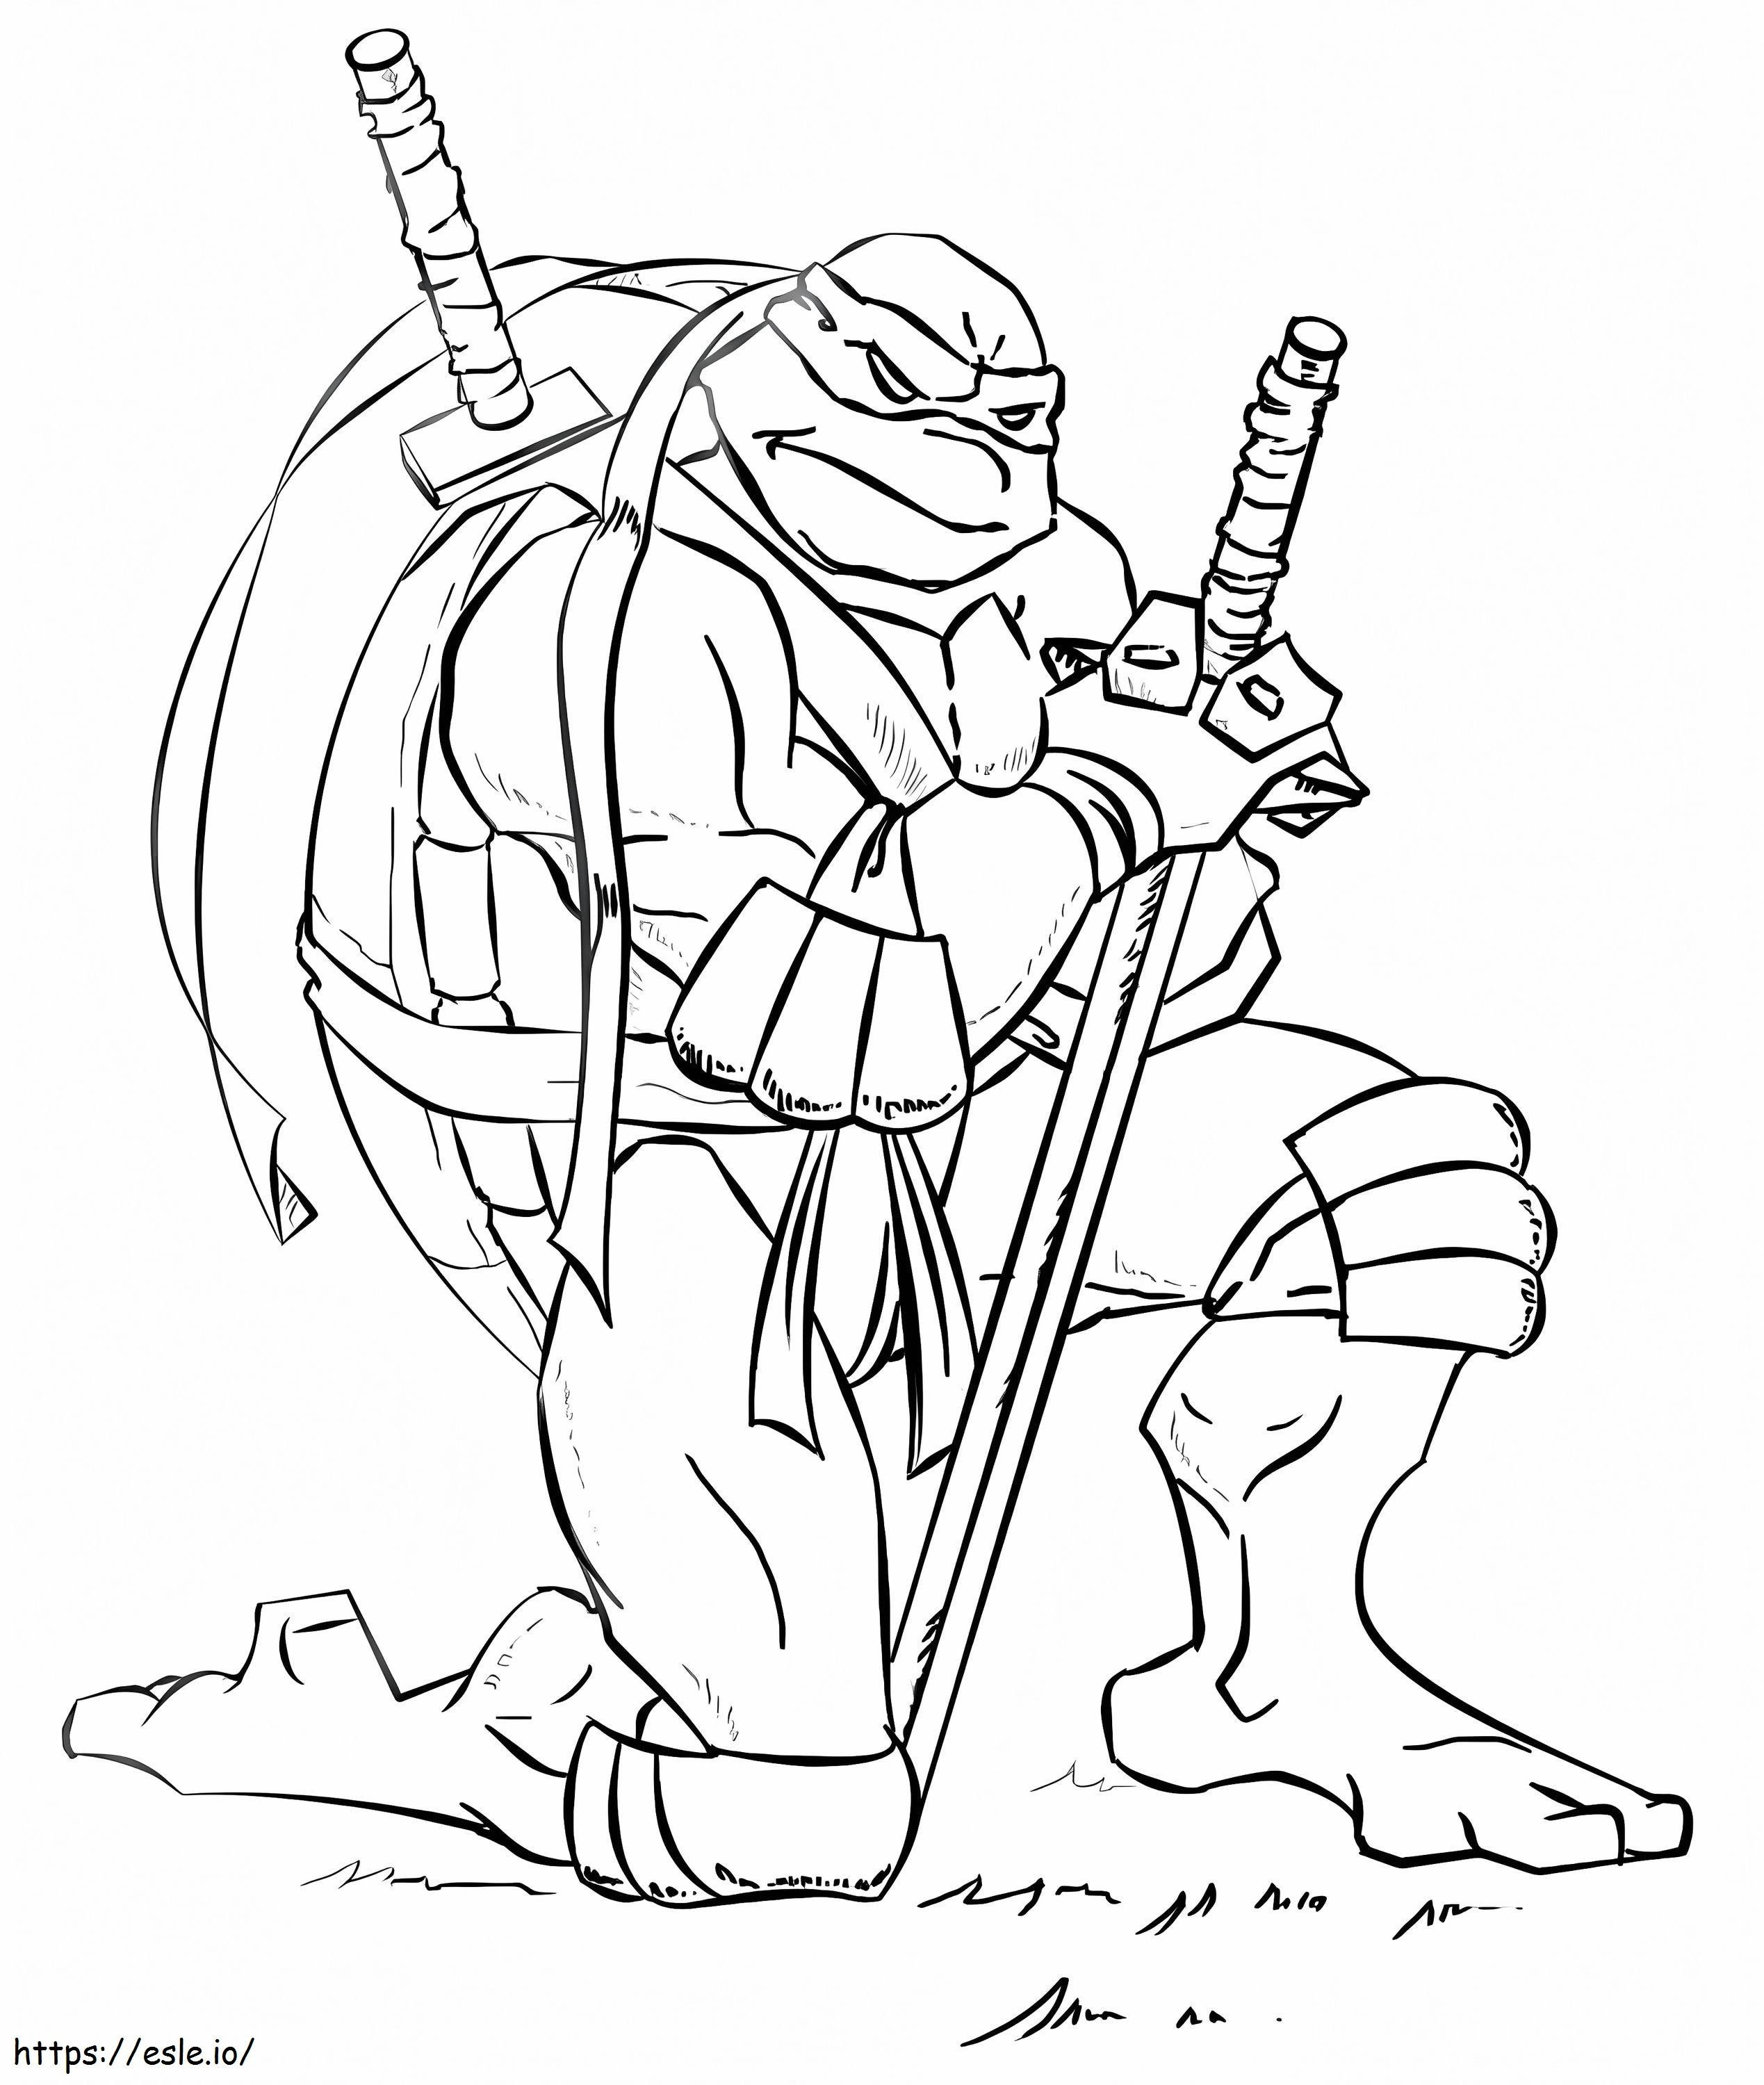 Leonardo von Ninja Turtles ausmalbilder